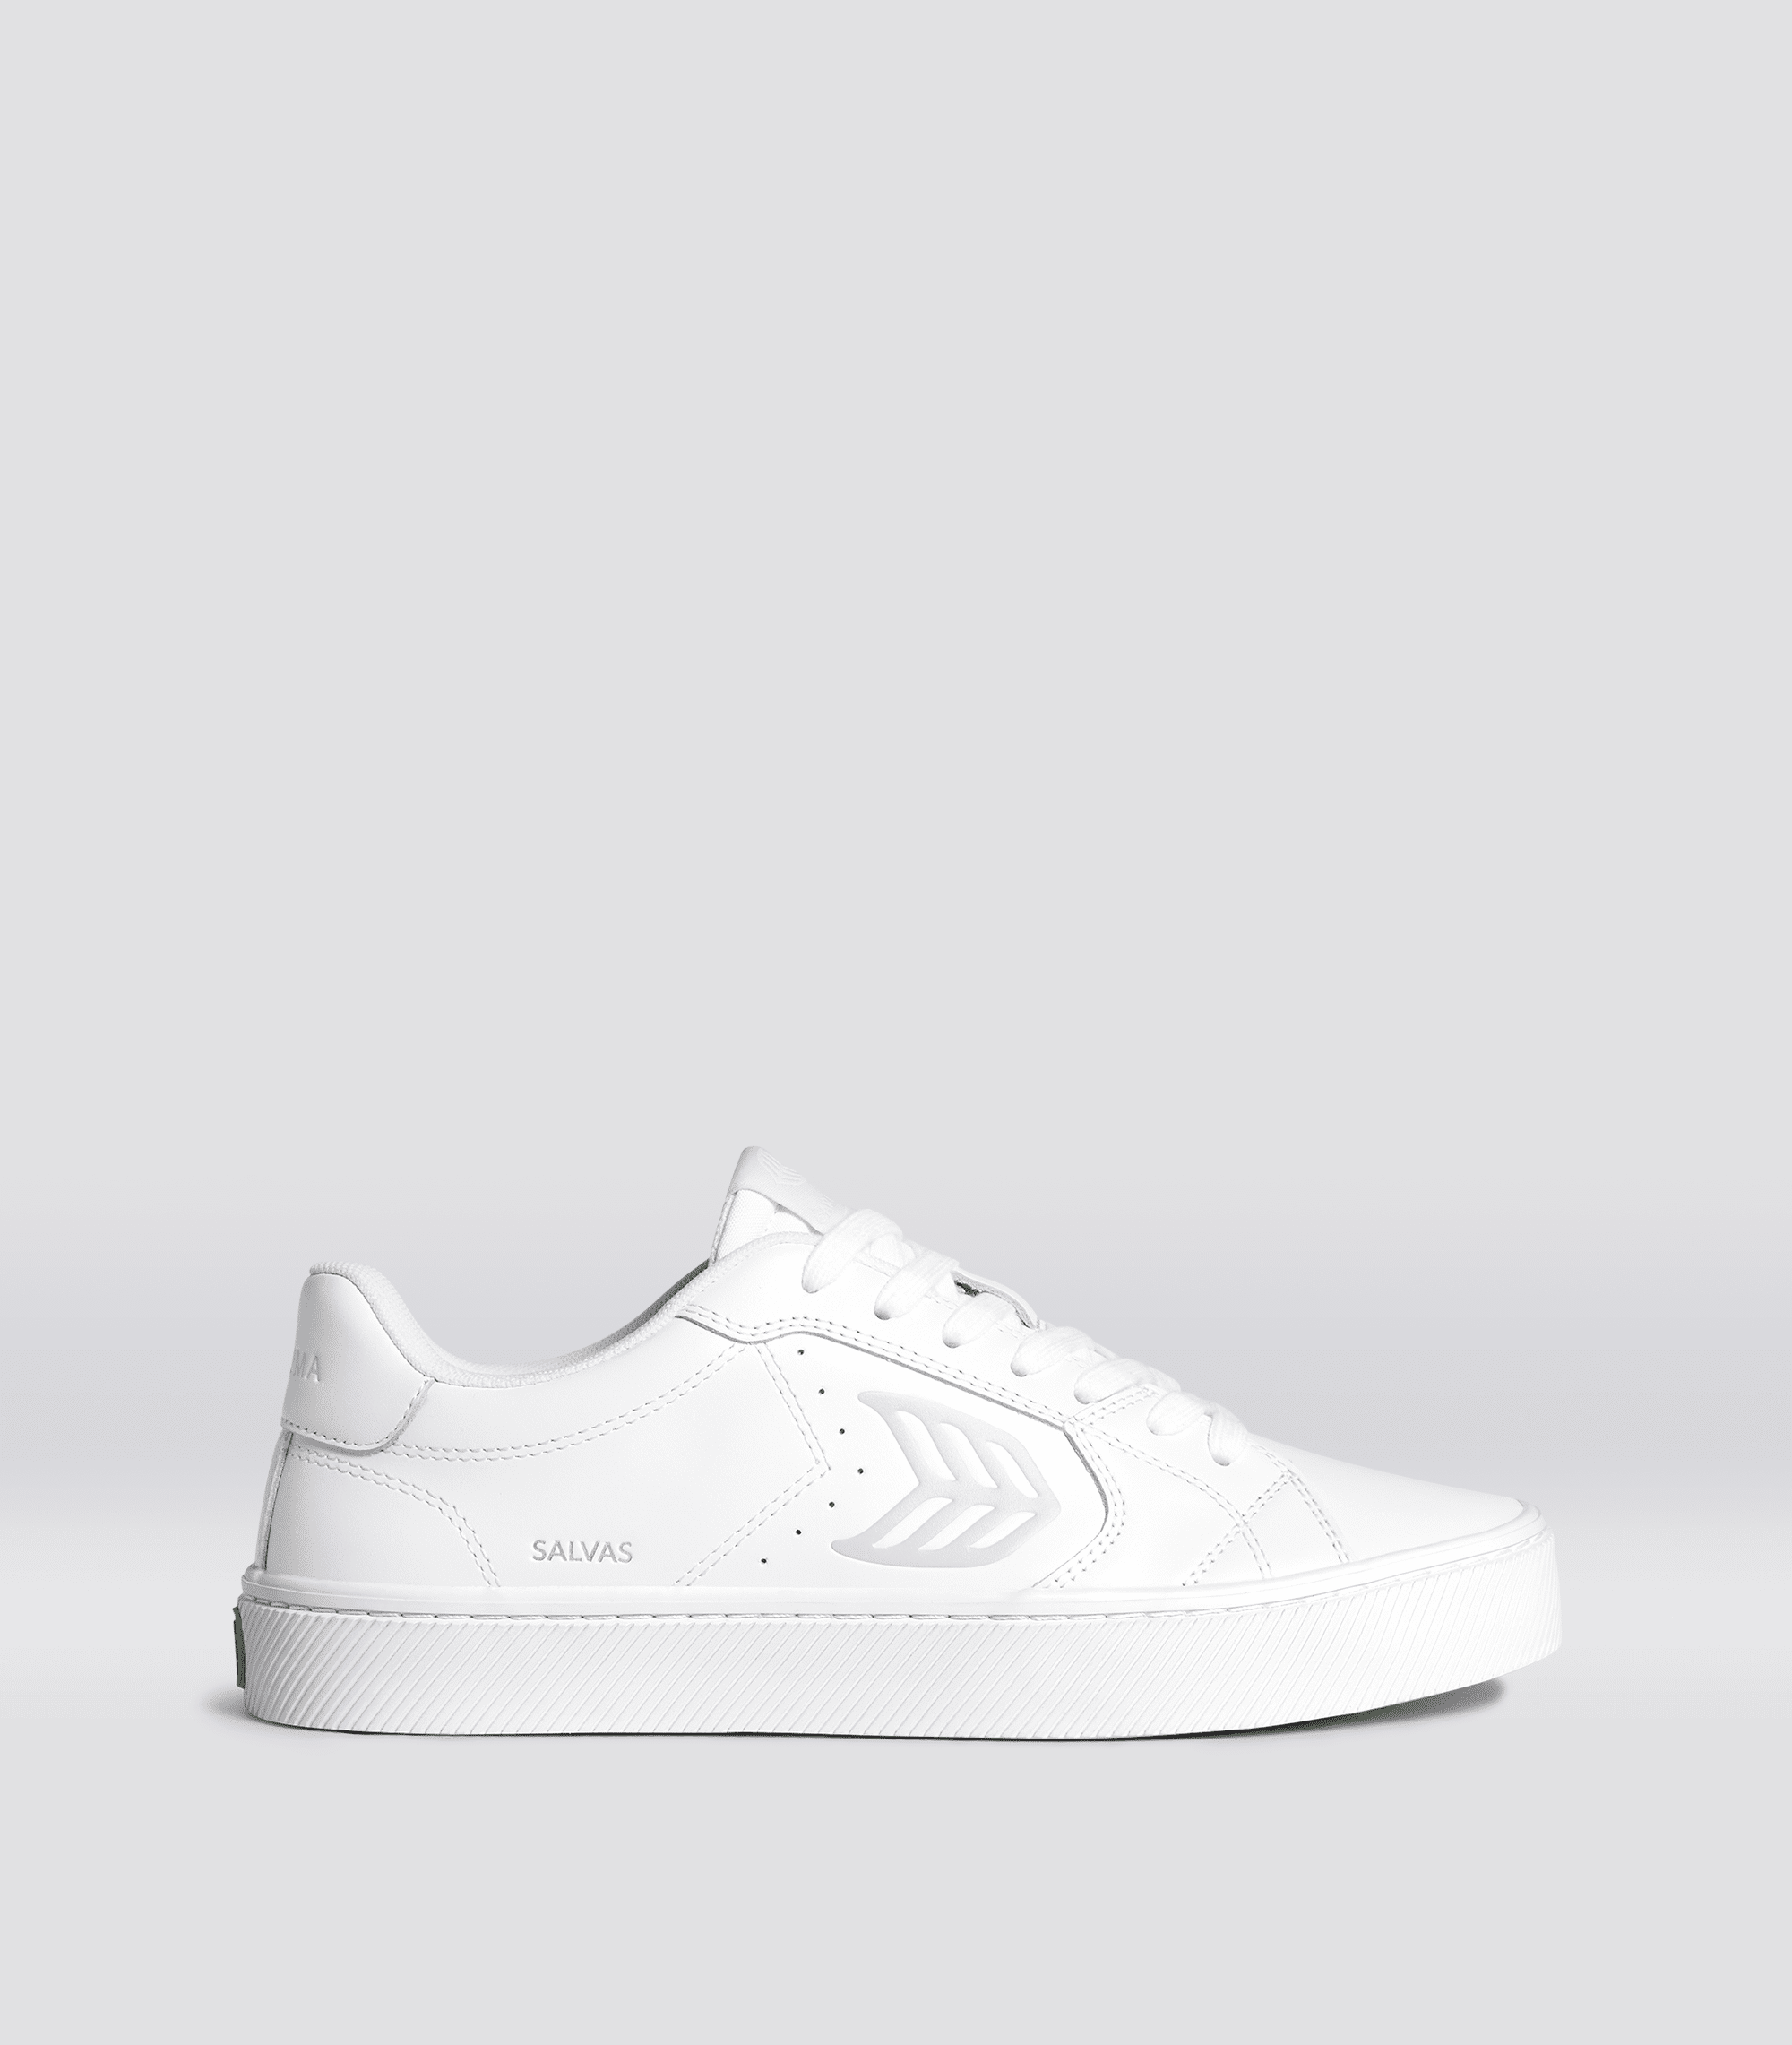 Cariuma SALVAS White Leather Sneaker Men White size:12.5